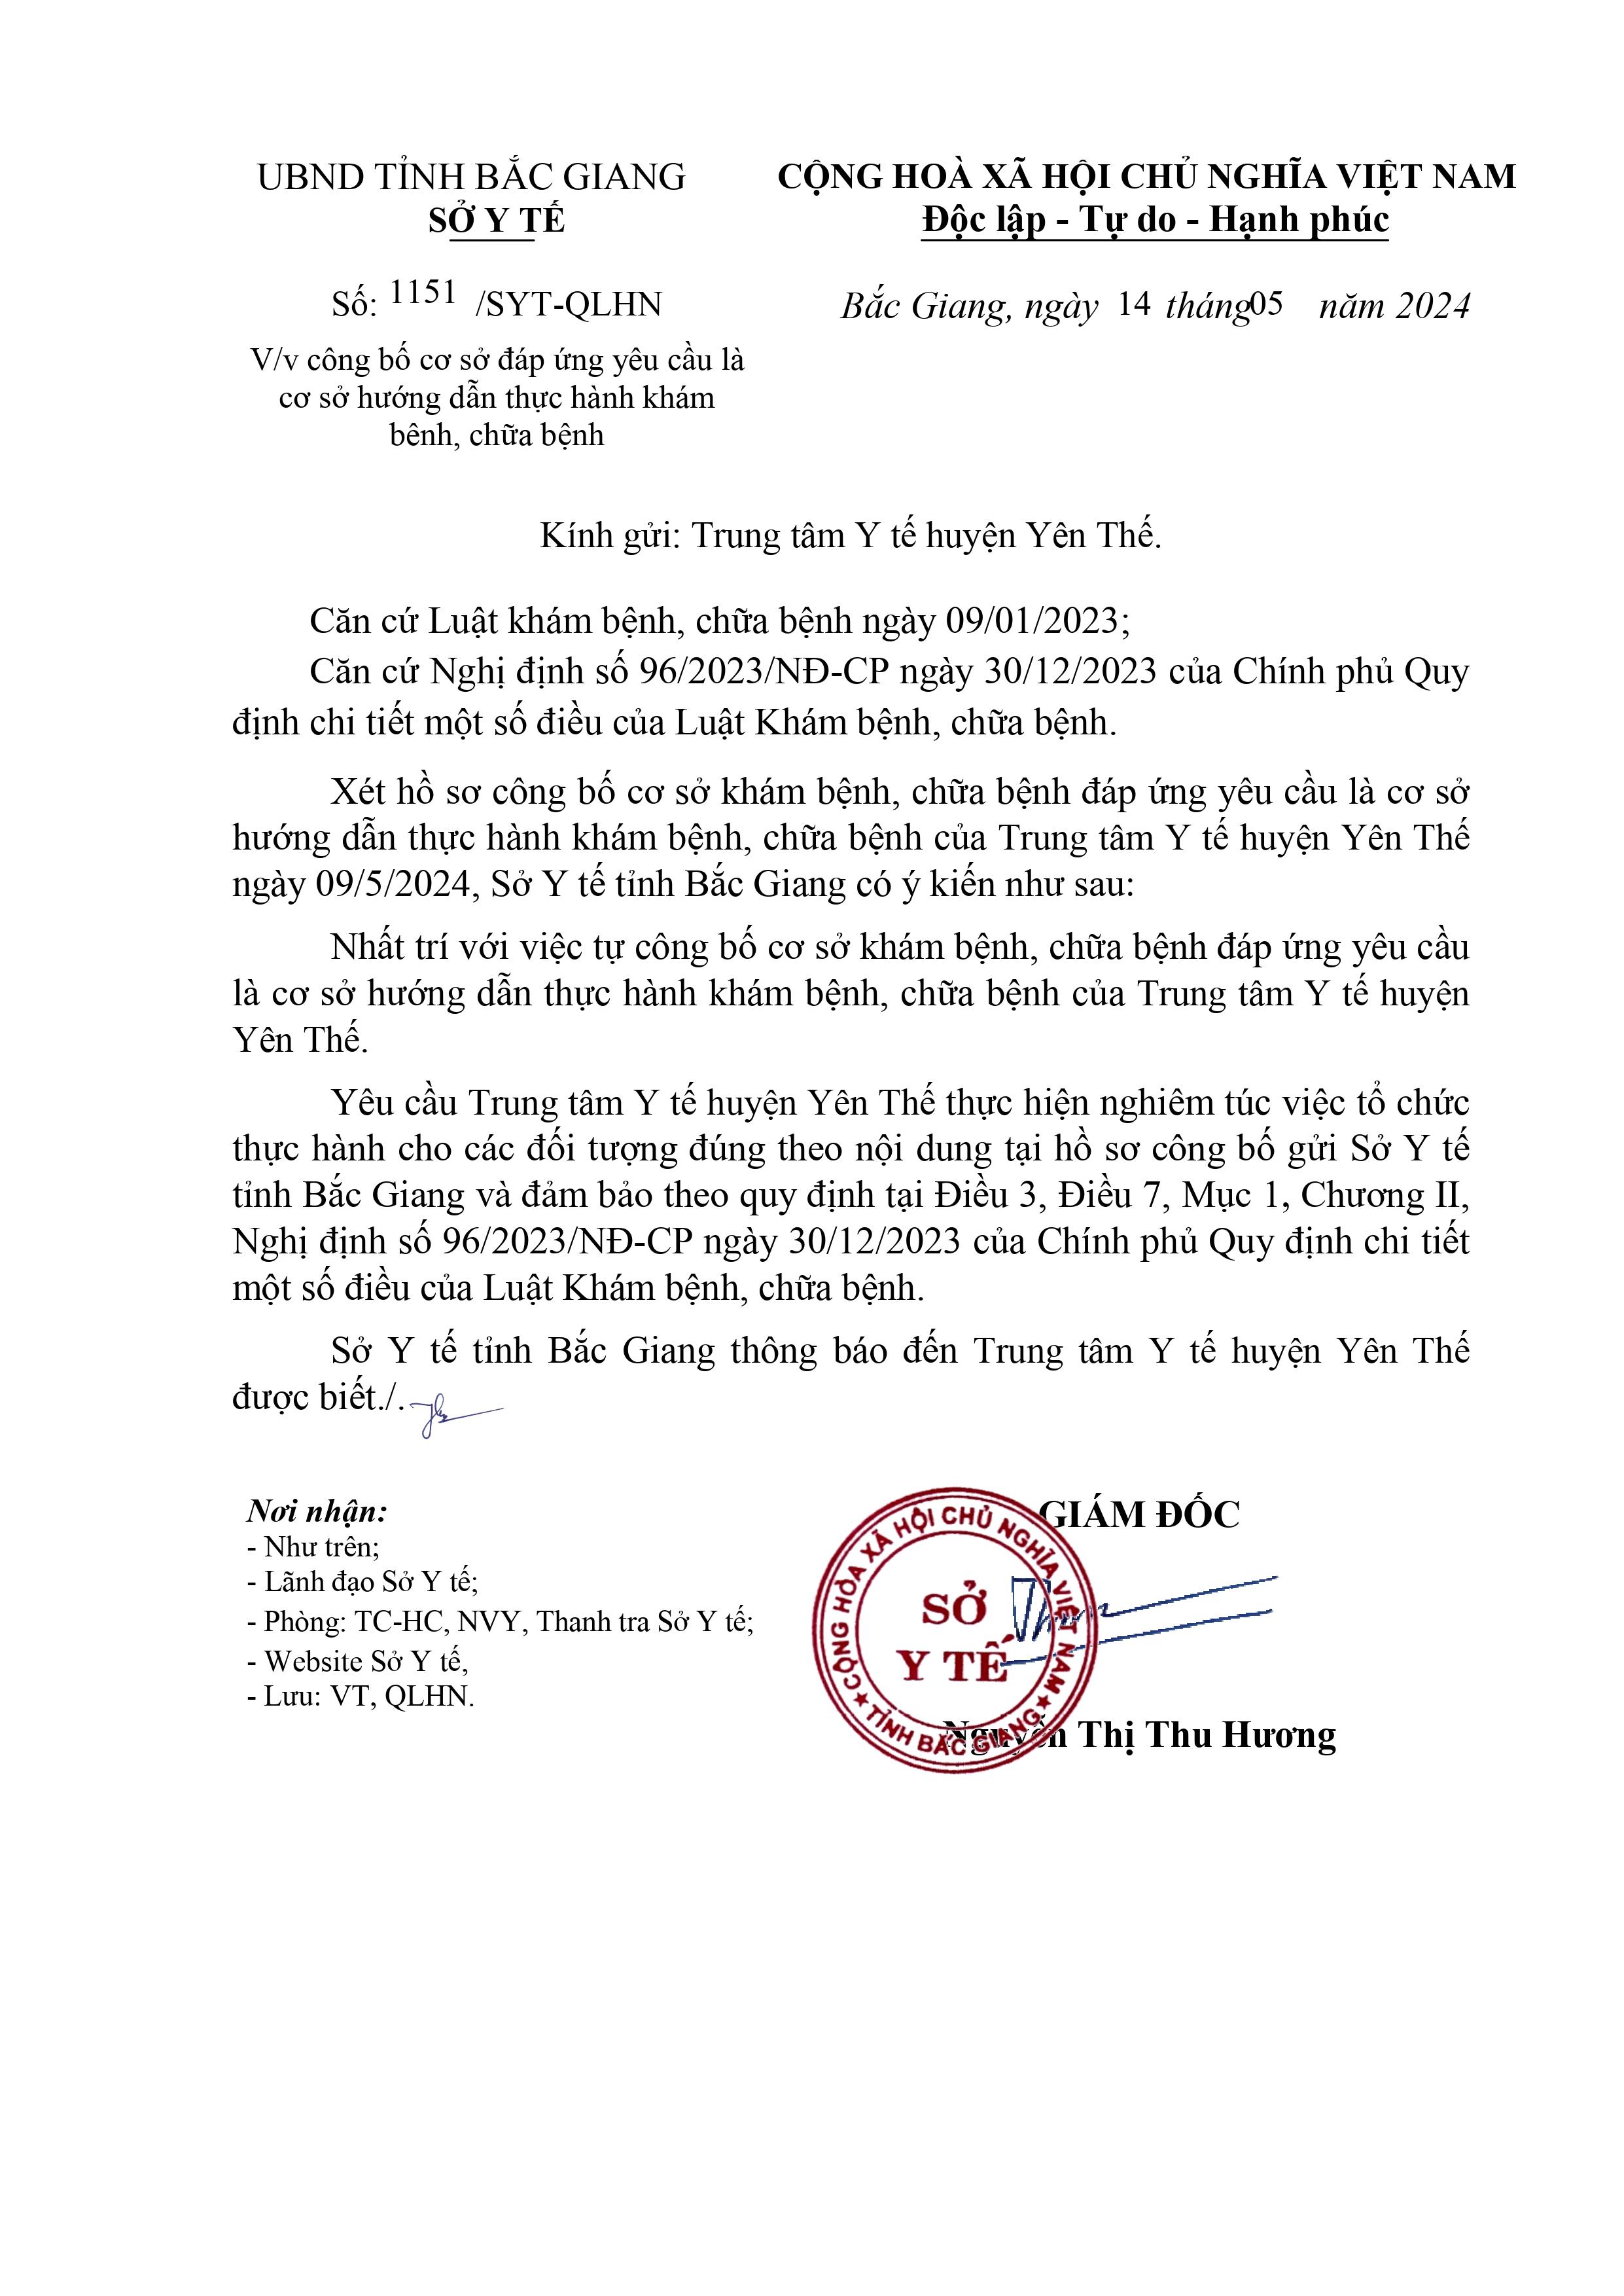 Trung tâm Y tế huyện Yên Thế được công bố là cơ sở hướng dẫn thực hành khám bệnh, chữa bệnh|https://trungtamytehuyenyenthe.vn/zh_CN/chi-tiet-tin-tuc/-/asset_publisher/M0UUAFstbTMq/content/trung-tam-y-te-huyen-yen-the-uoc-cong-bo-la-co-so-huong-dan-thuc-hanh-kham-benh-chua-benh